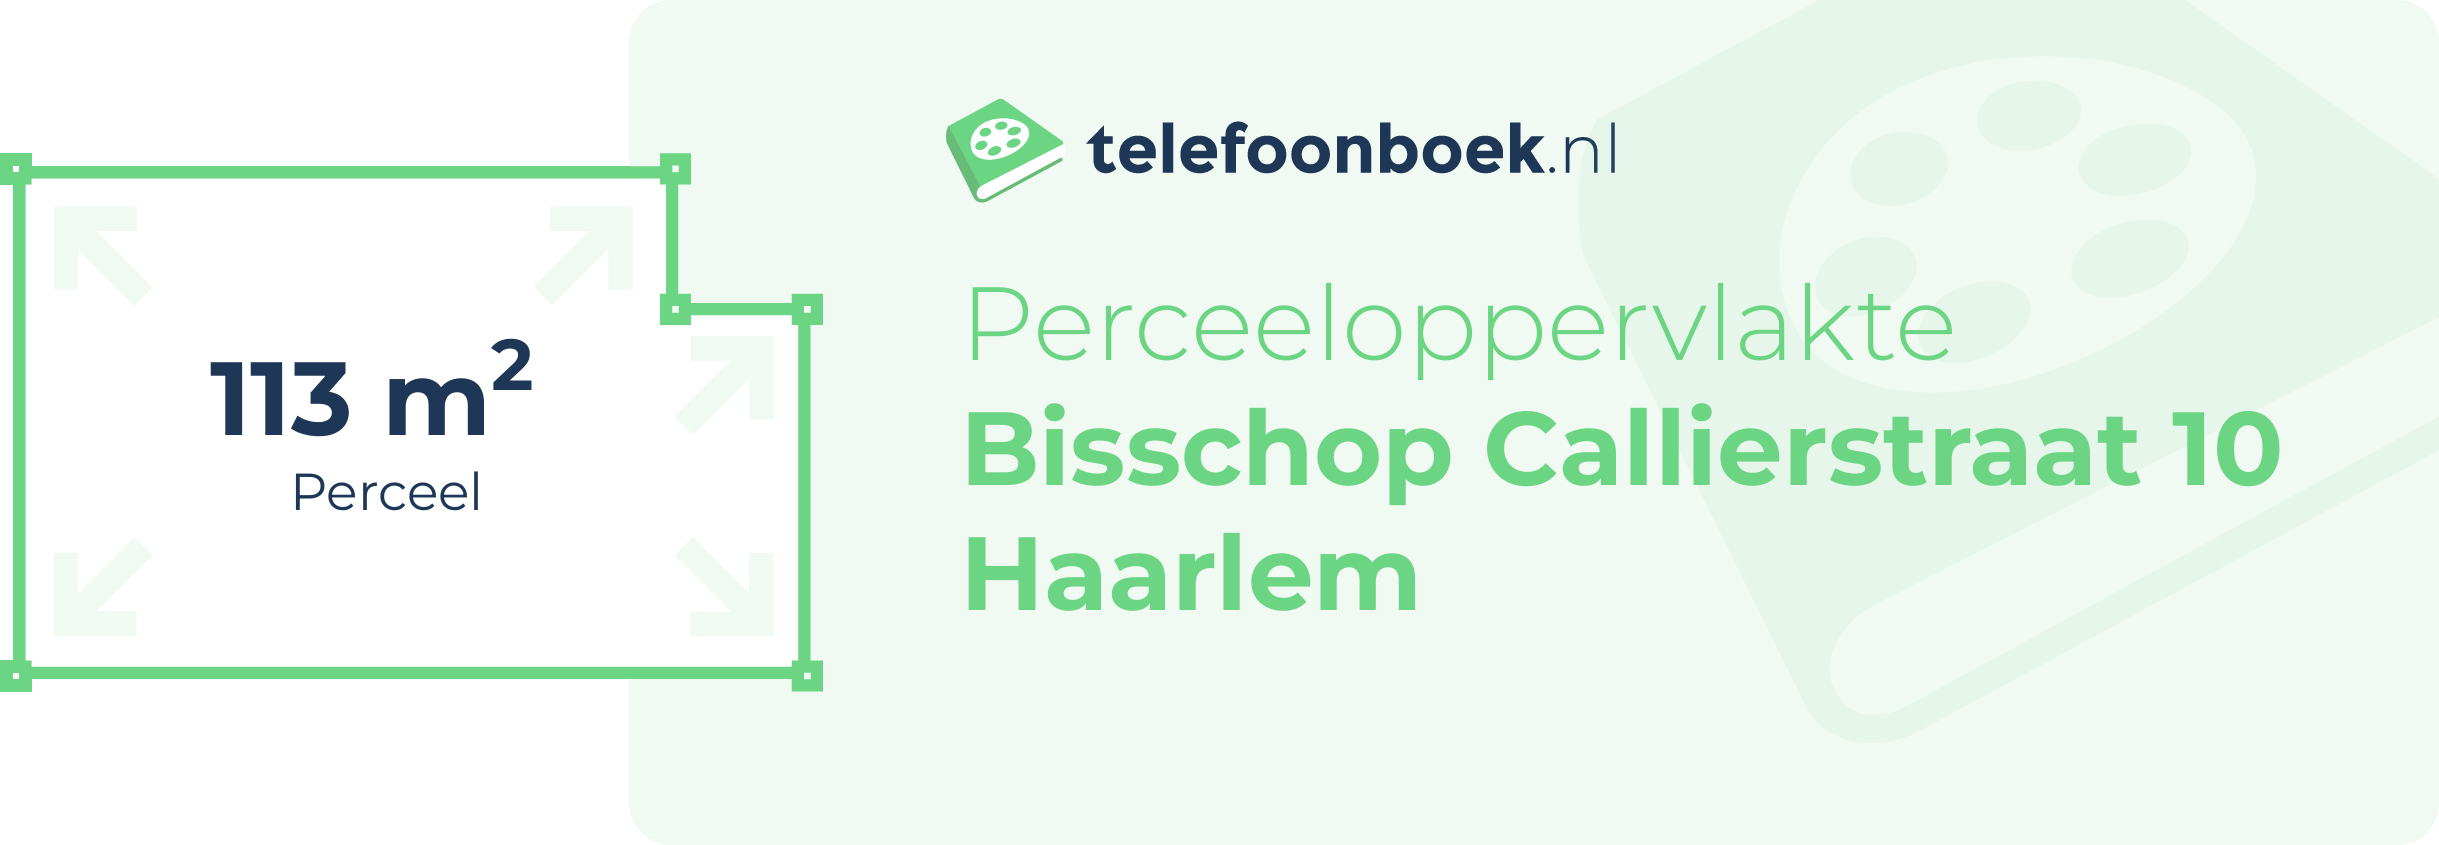 Perceeloppervlakte Bisschop Callierstraat 10 Haarlem